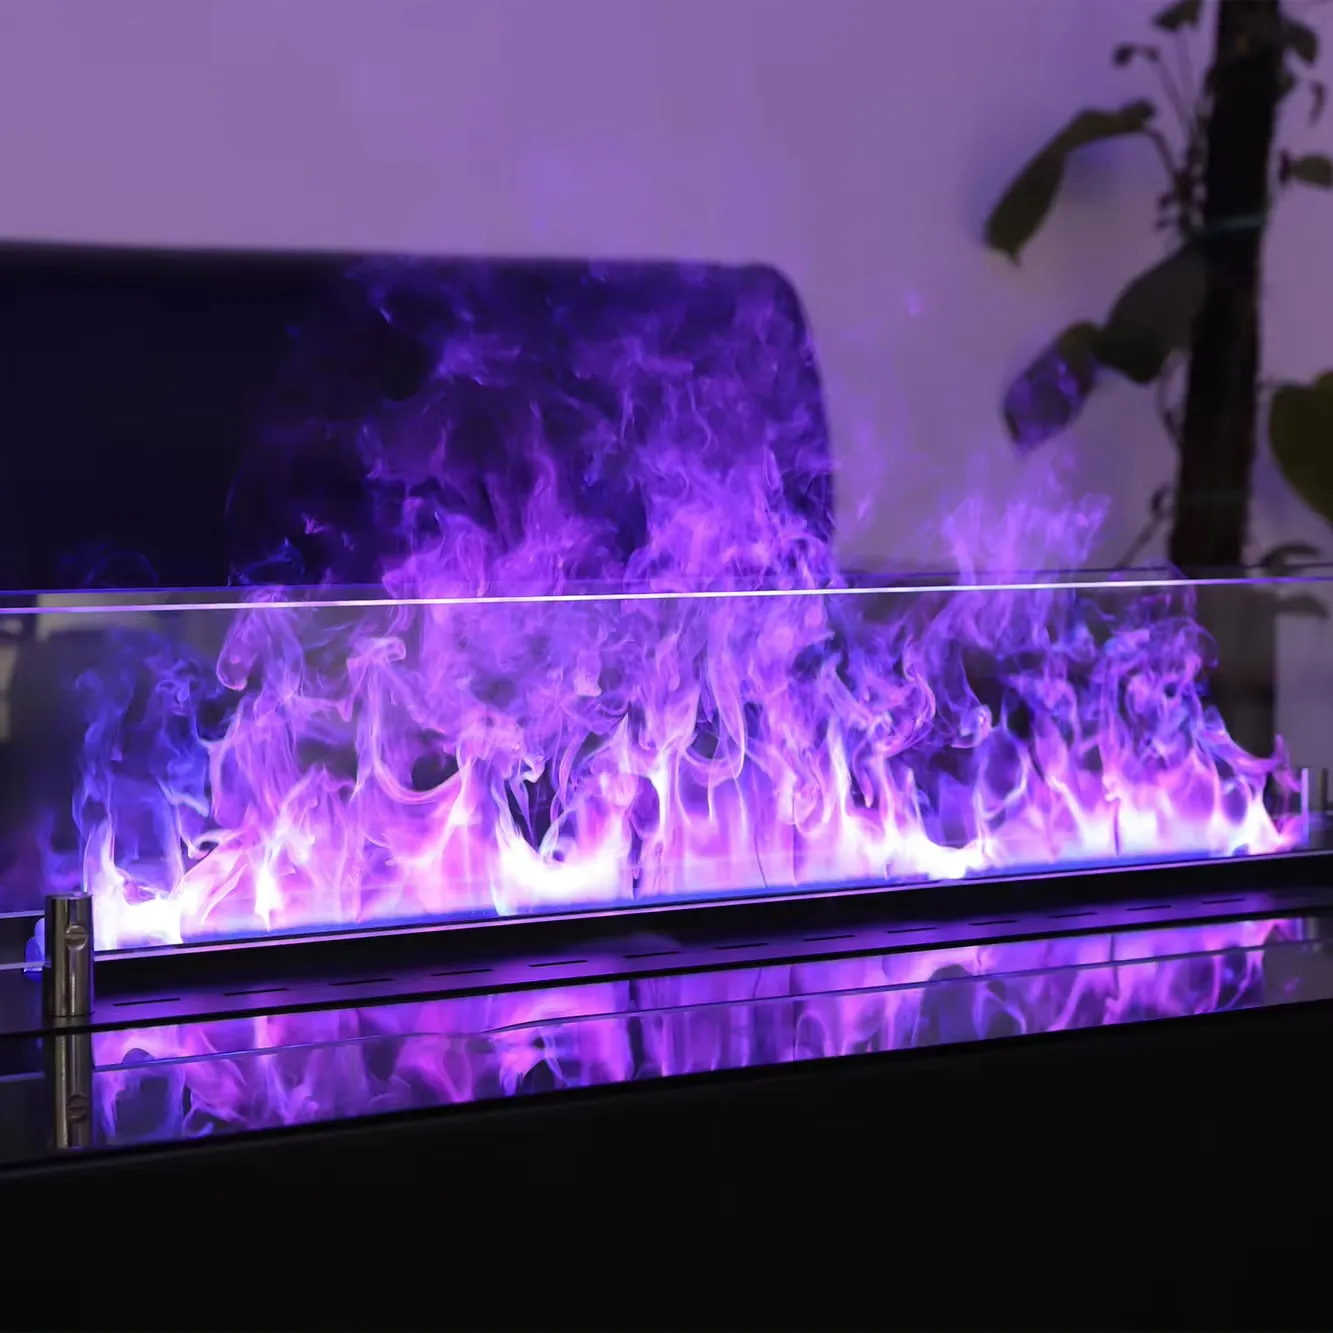 Inno-lửa 72 inch lò sưởi hơi tự động tạo độ ẩm lò sưởi điện bếp chèn với ánh sáng LED